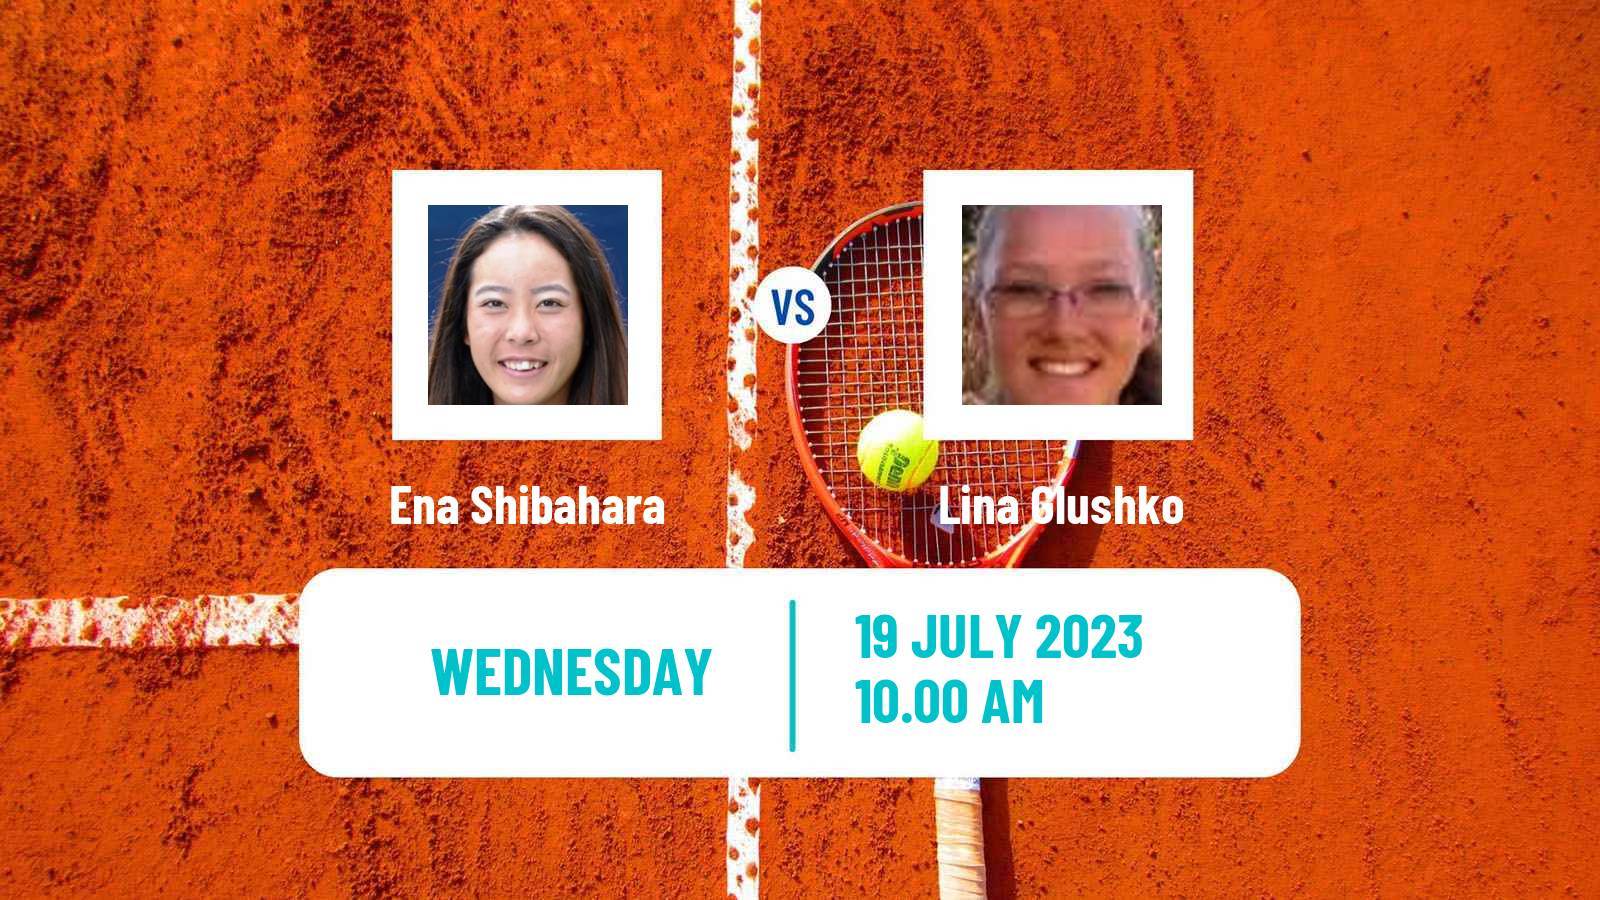 Tennis ITF W40 Porto 3 Women Ena Shibahara - Lina Glushko